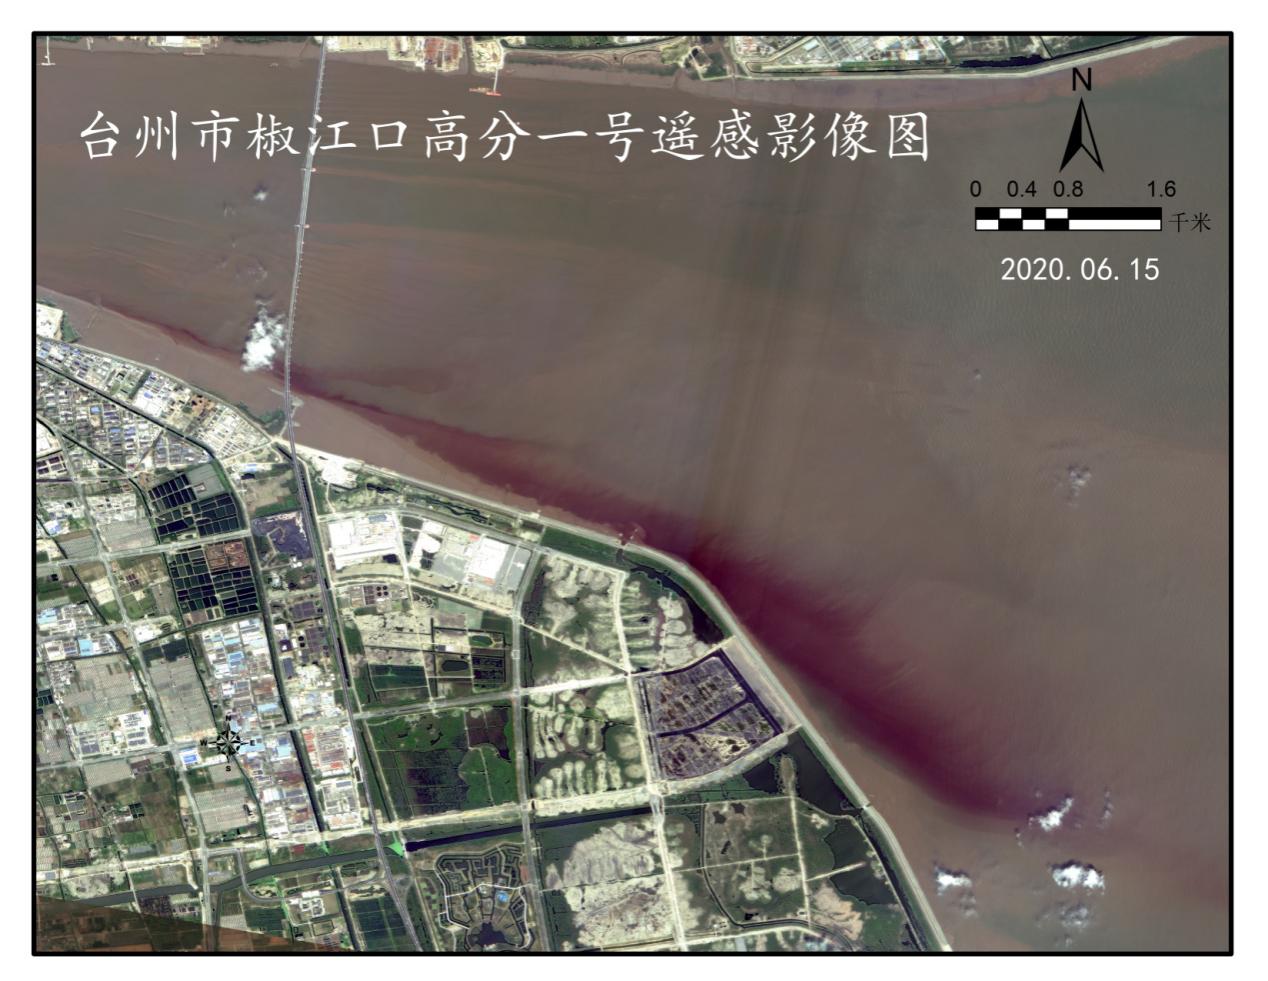 部分指标超标近千倍，浙江台州市椒江近岸海域污染严重